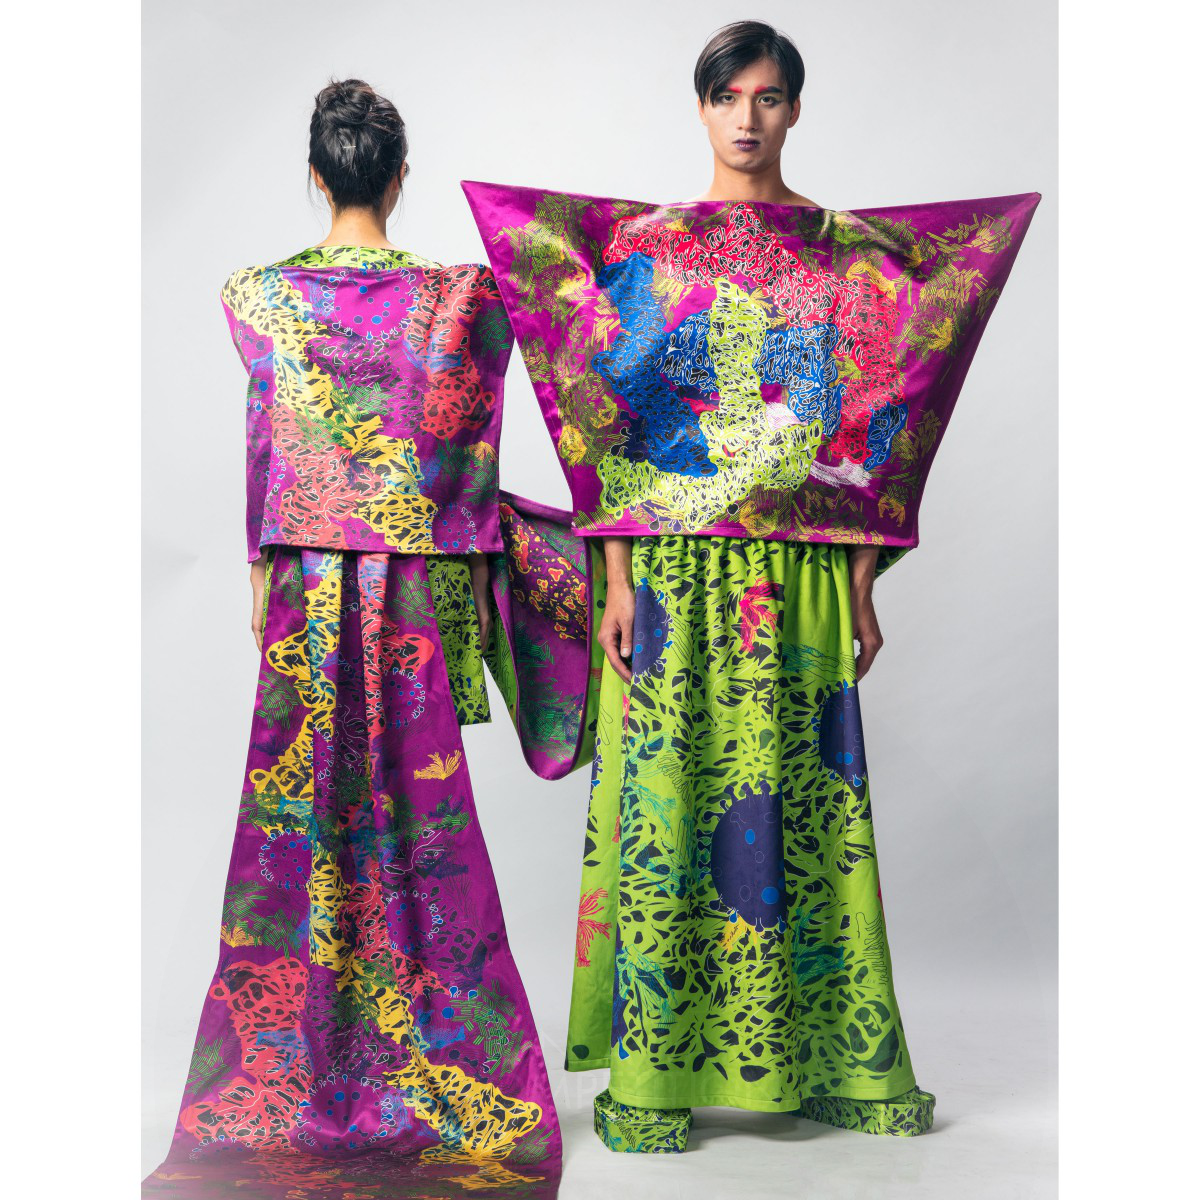 Sheng Qiu Textile Design